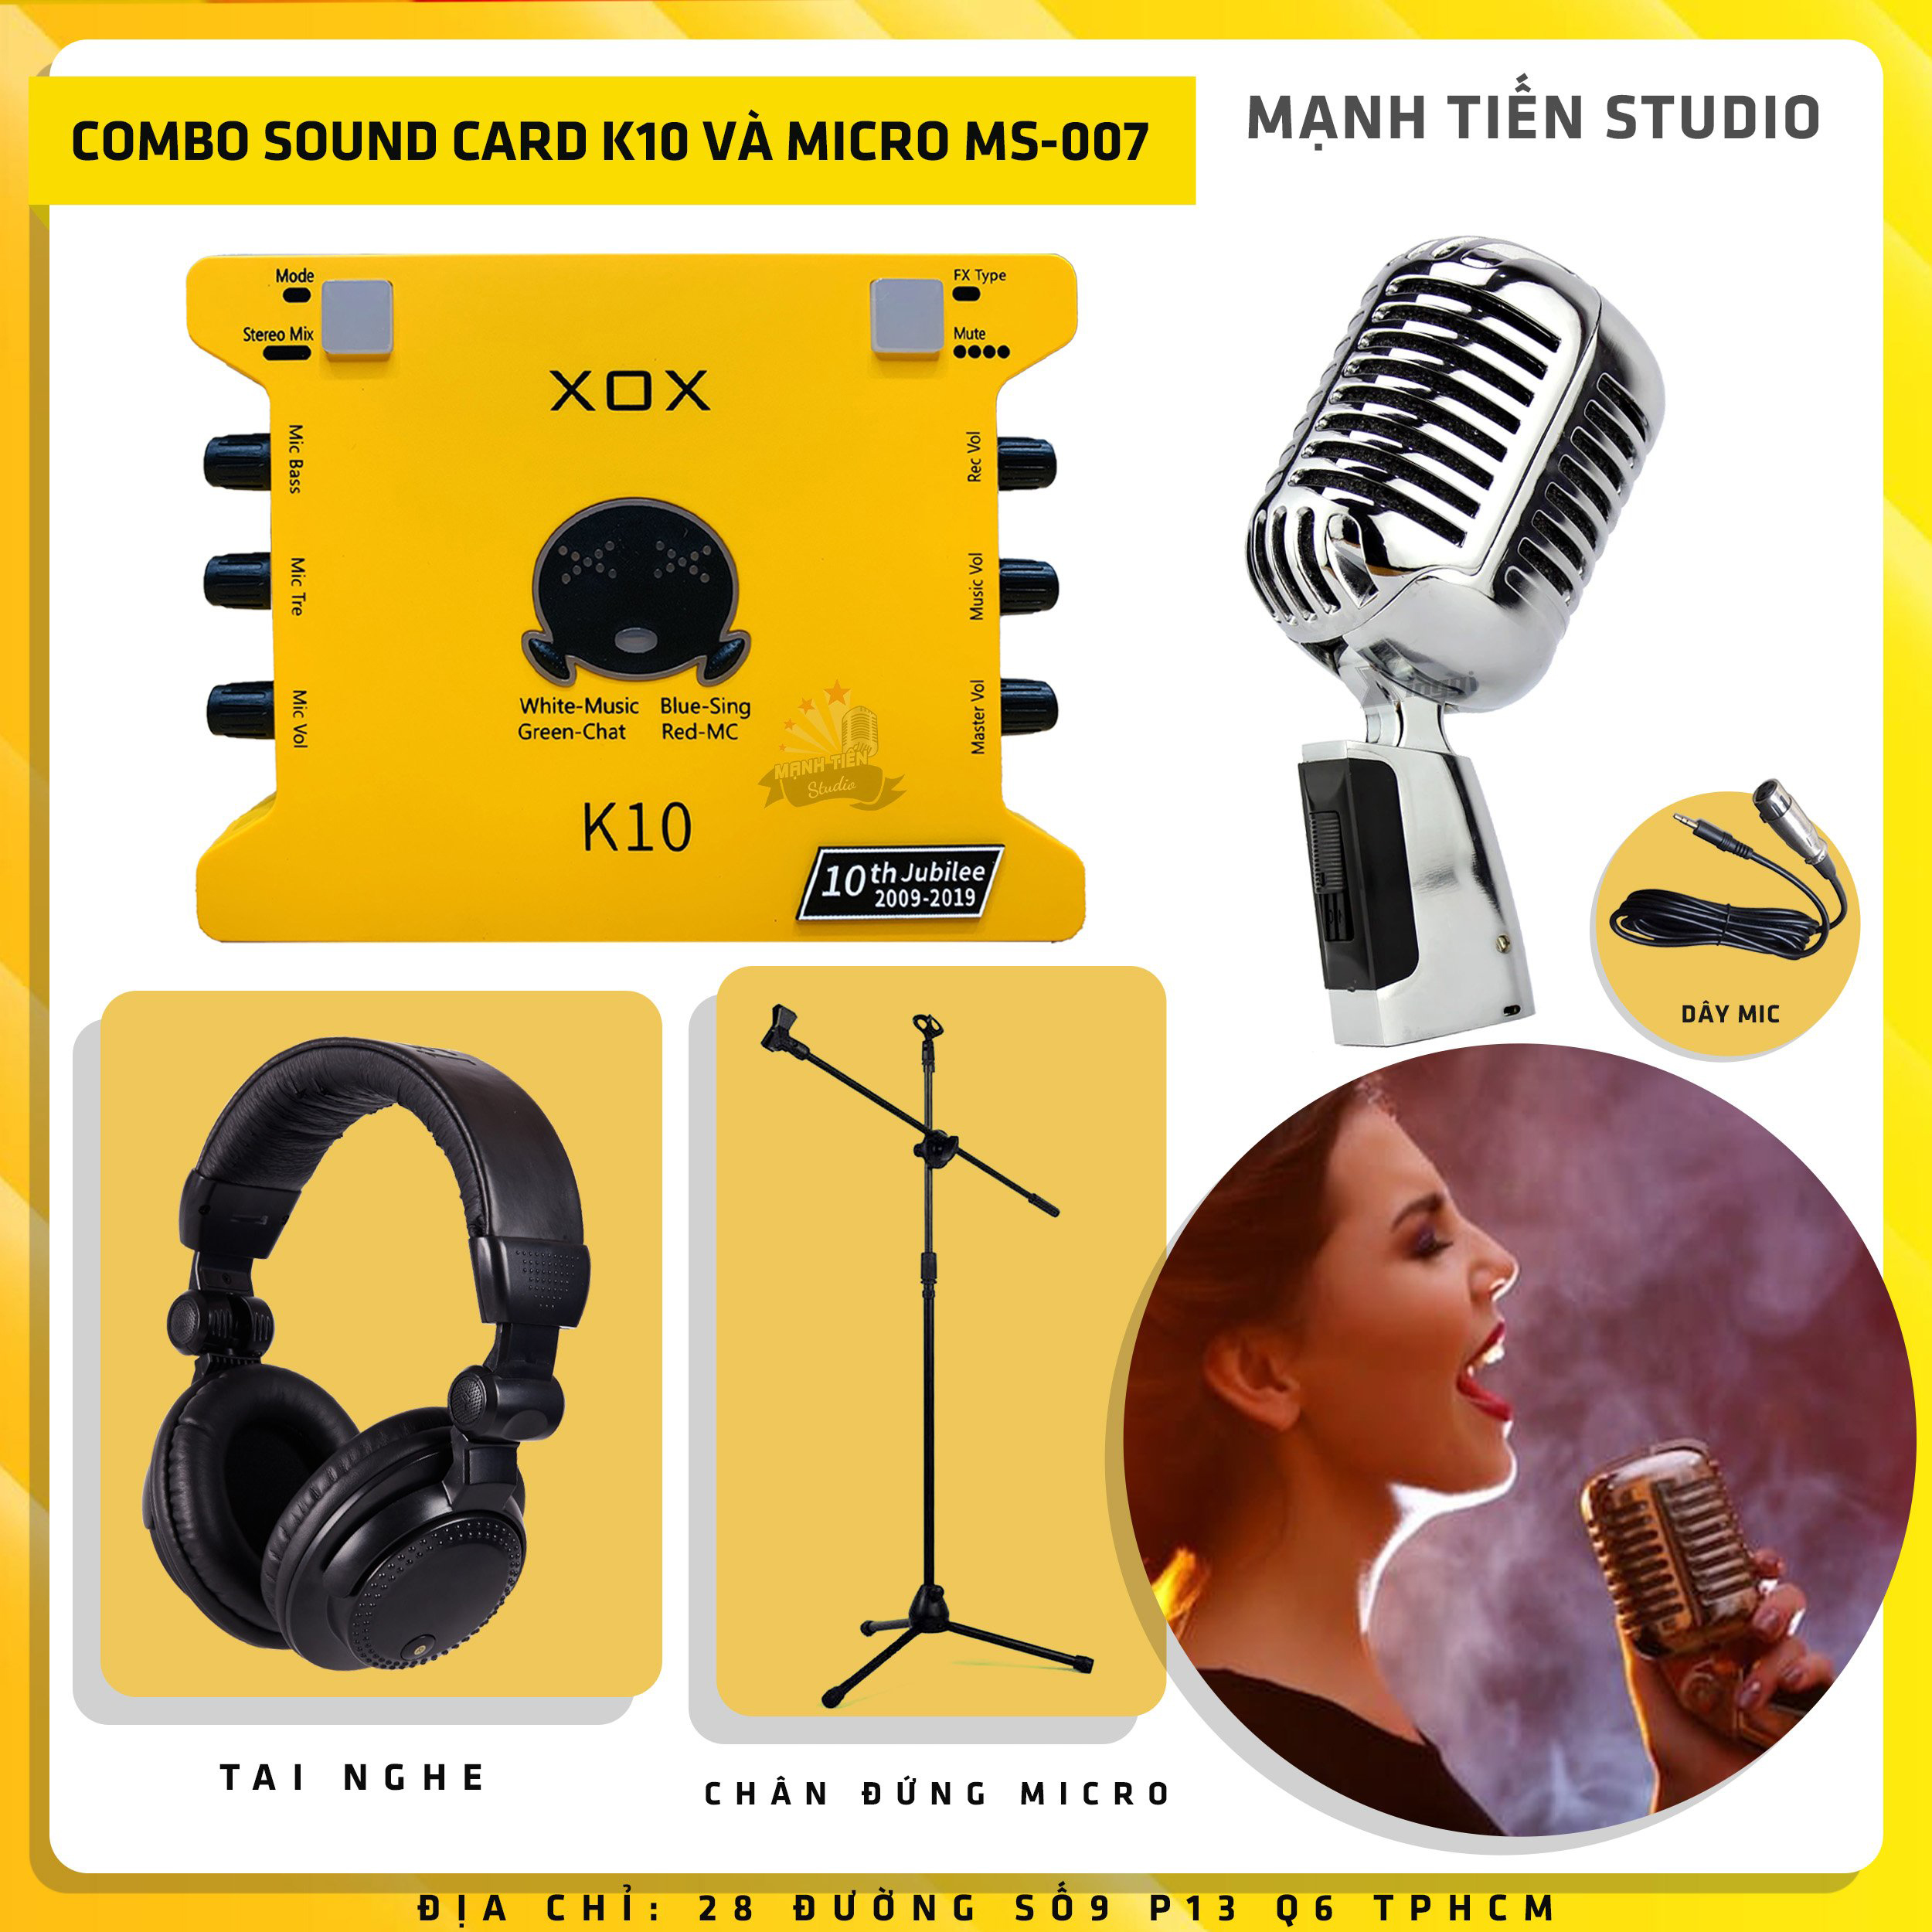 Combo thu âm, livestream Micro Ami MS-007, Sound card XOX K10 Jubilee - Kèm full phụ kiện chân đứng phòng thu, tai nghe, dây micro - Hỗ trợ thu âm, karaoke online chuyên nghiệp - Hàng nhập khẩu